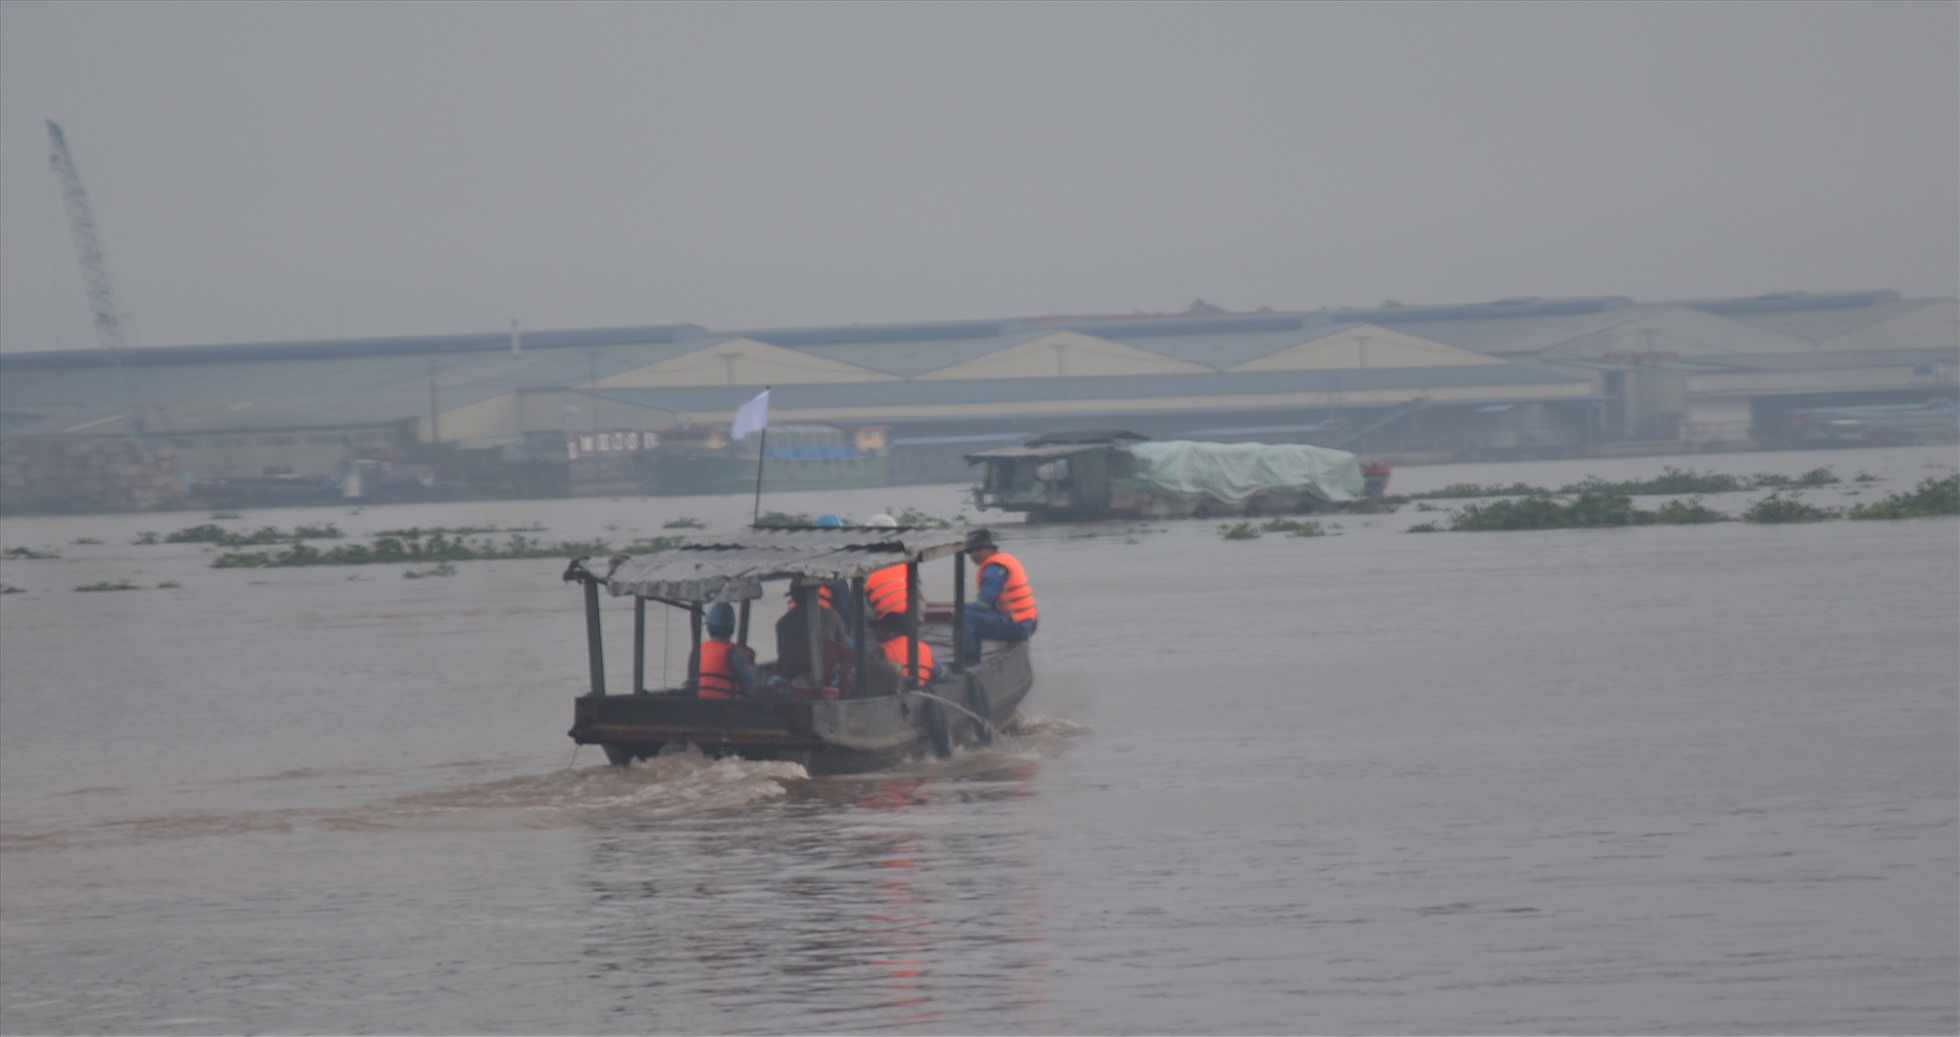 Hơn 38 giờ sau khi một công nhân rơi xuống Sông Tiền mất tích xảy ra tại tháp trụ T16 của cầu Mỹ Thuận 2 phía bờ Vĩnh Long, lực lượng đã dùng các phương tiện nỗ lực tìm kiếm công nhân mất tích. Ảnh: Th.N